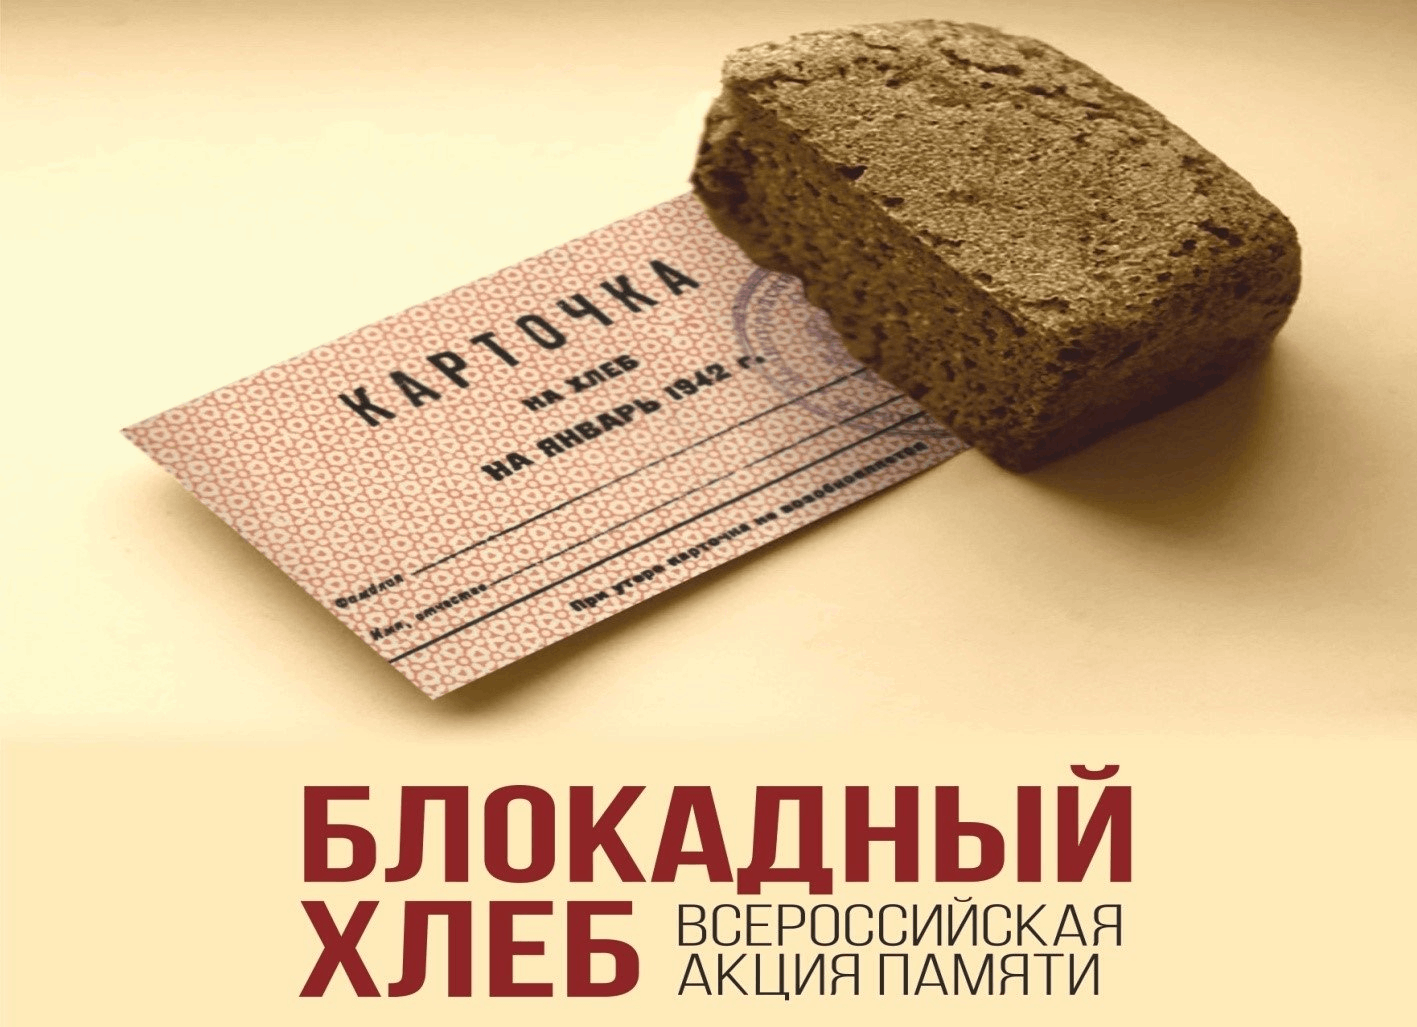 Акция блокадный хлеб Ленинграда 2020